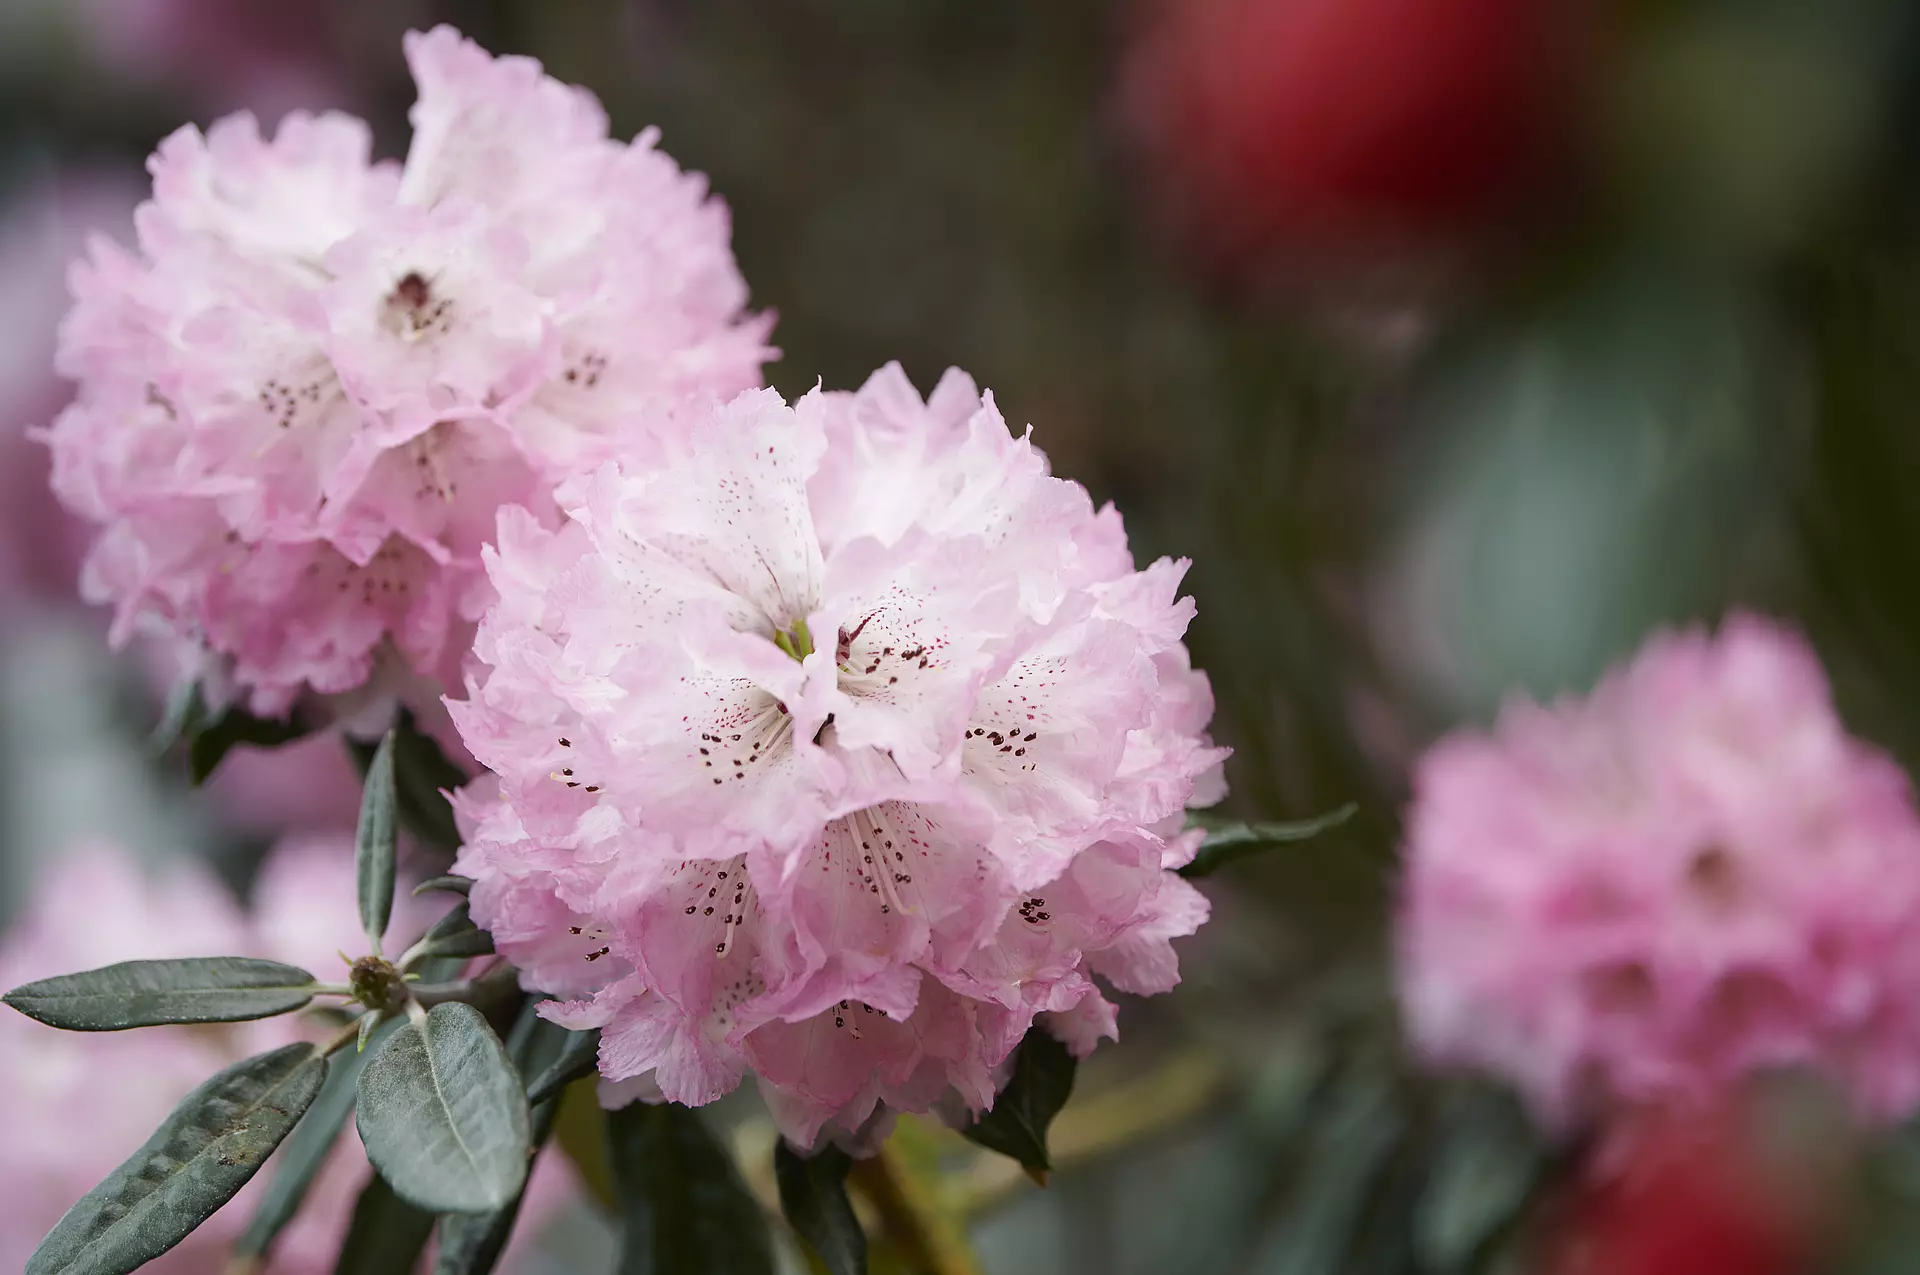 Rhododendron protistum var. giganteum